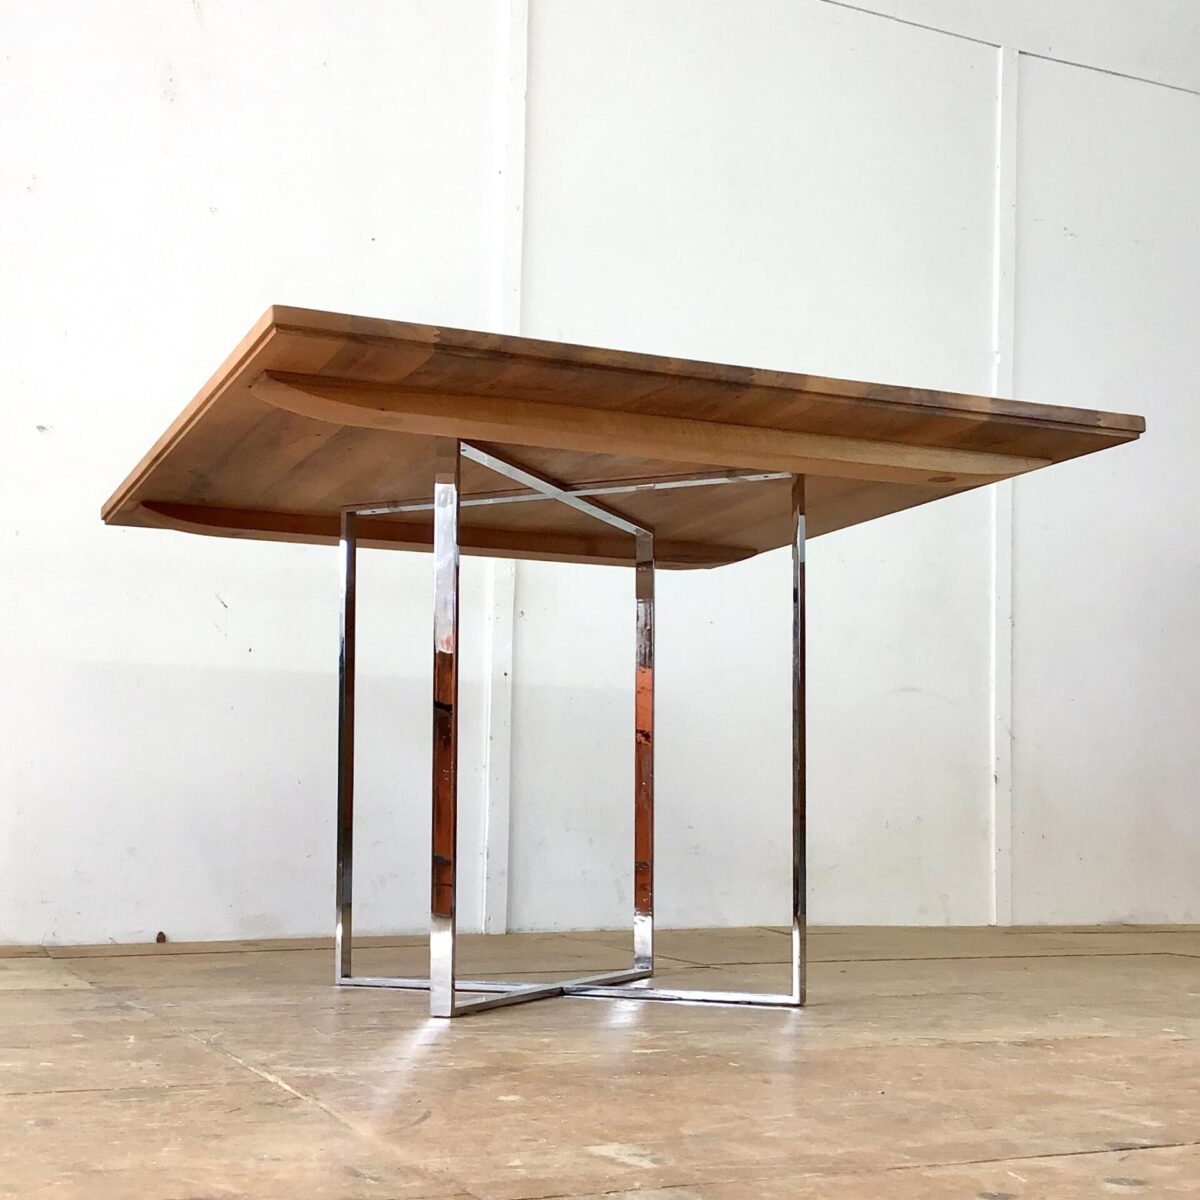 Schlichter Sitzungstisch aus Nussbaum Vollholz, mit Metallfuss verchromt.110x110cm Höhe 75cm. Holzoberfläche mit Naturöl behandelt.